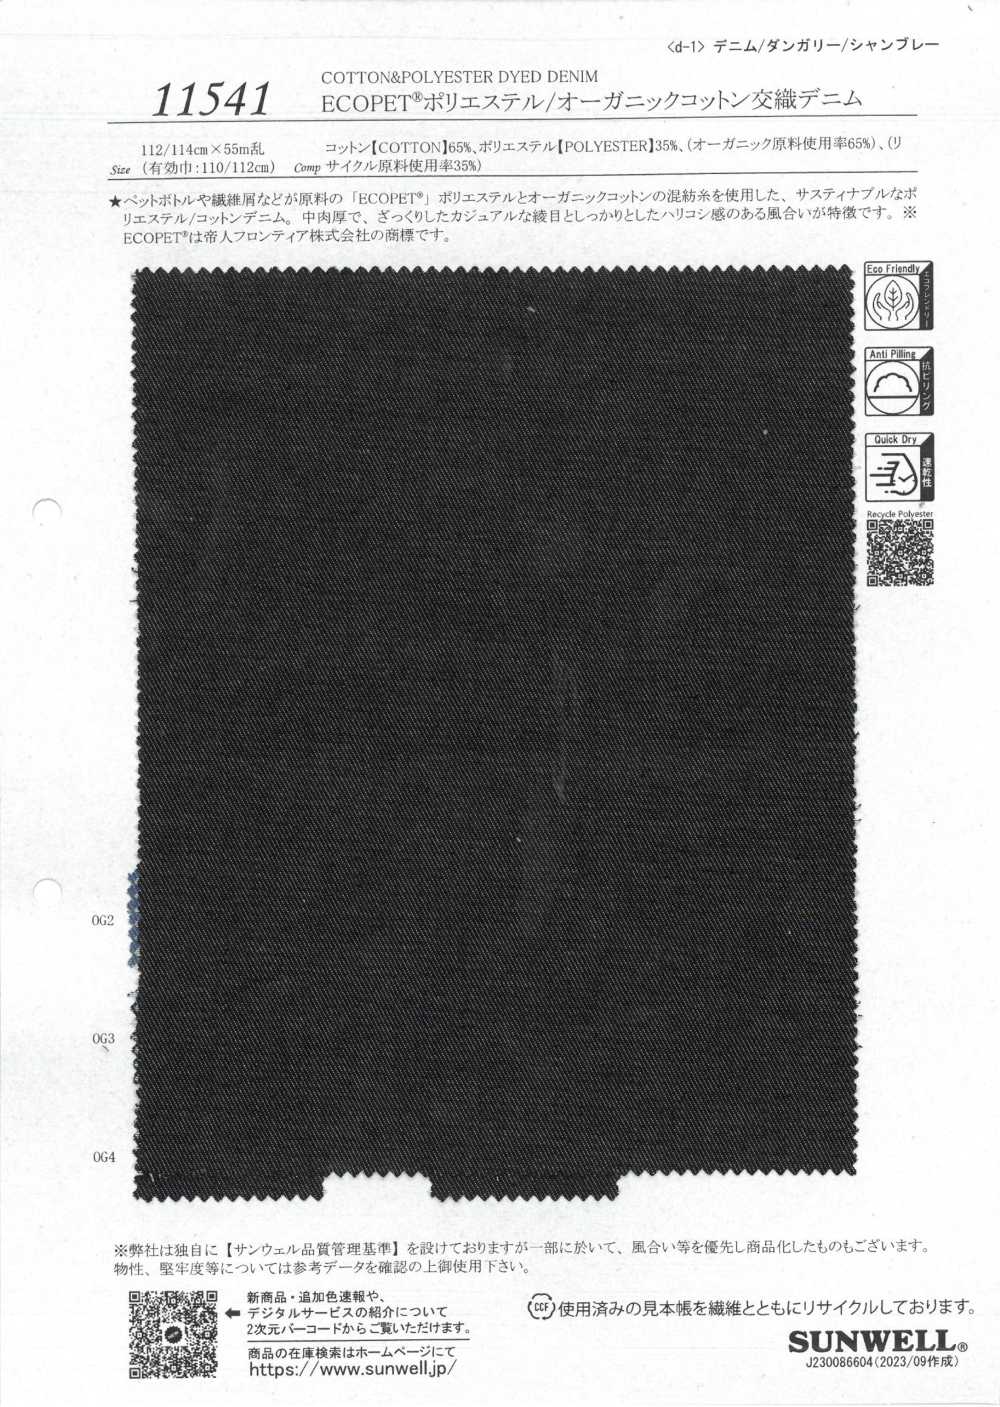 11541 Vải Vải Bò Pha Polyester/bông Hữu Cơ ECOPET® SUNWELL ( Giếng Trời )